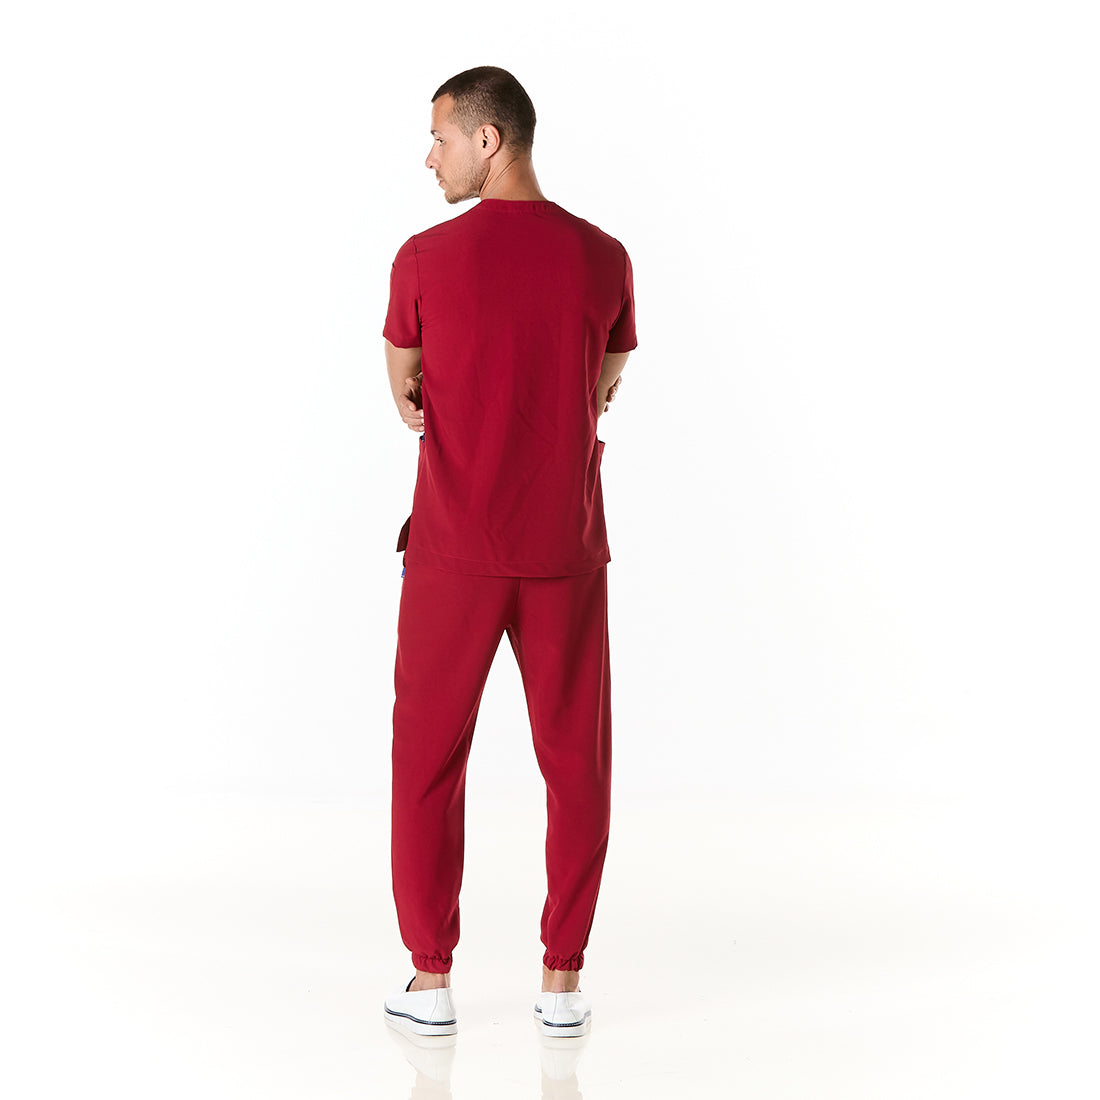 Hombre vistiendo pijama sanitario color vino con cuello en v y pantalon tipo jogger - espalda